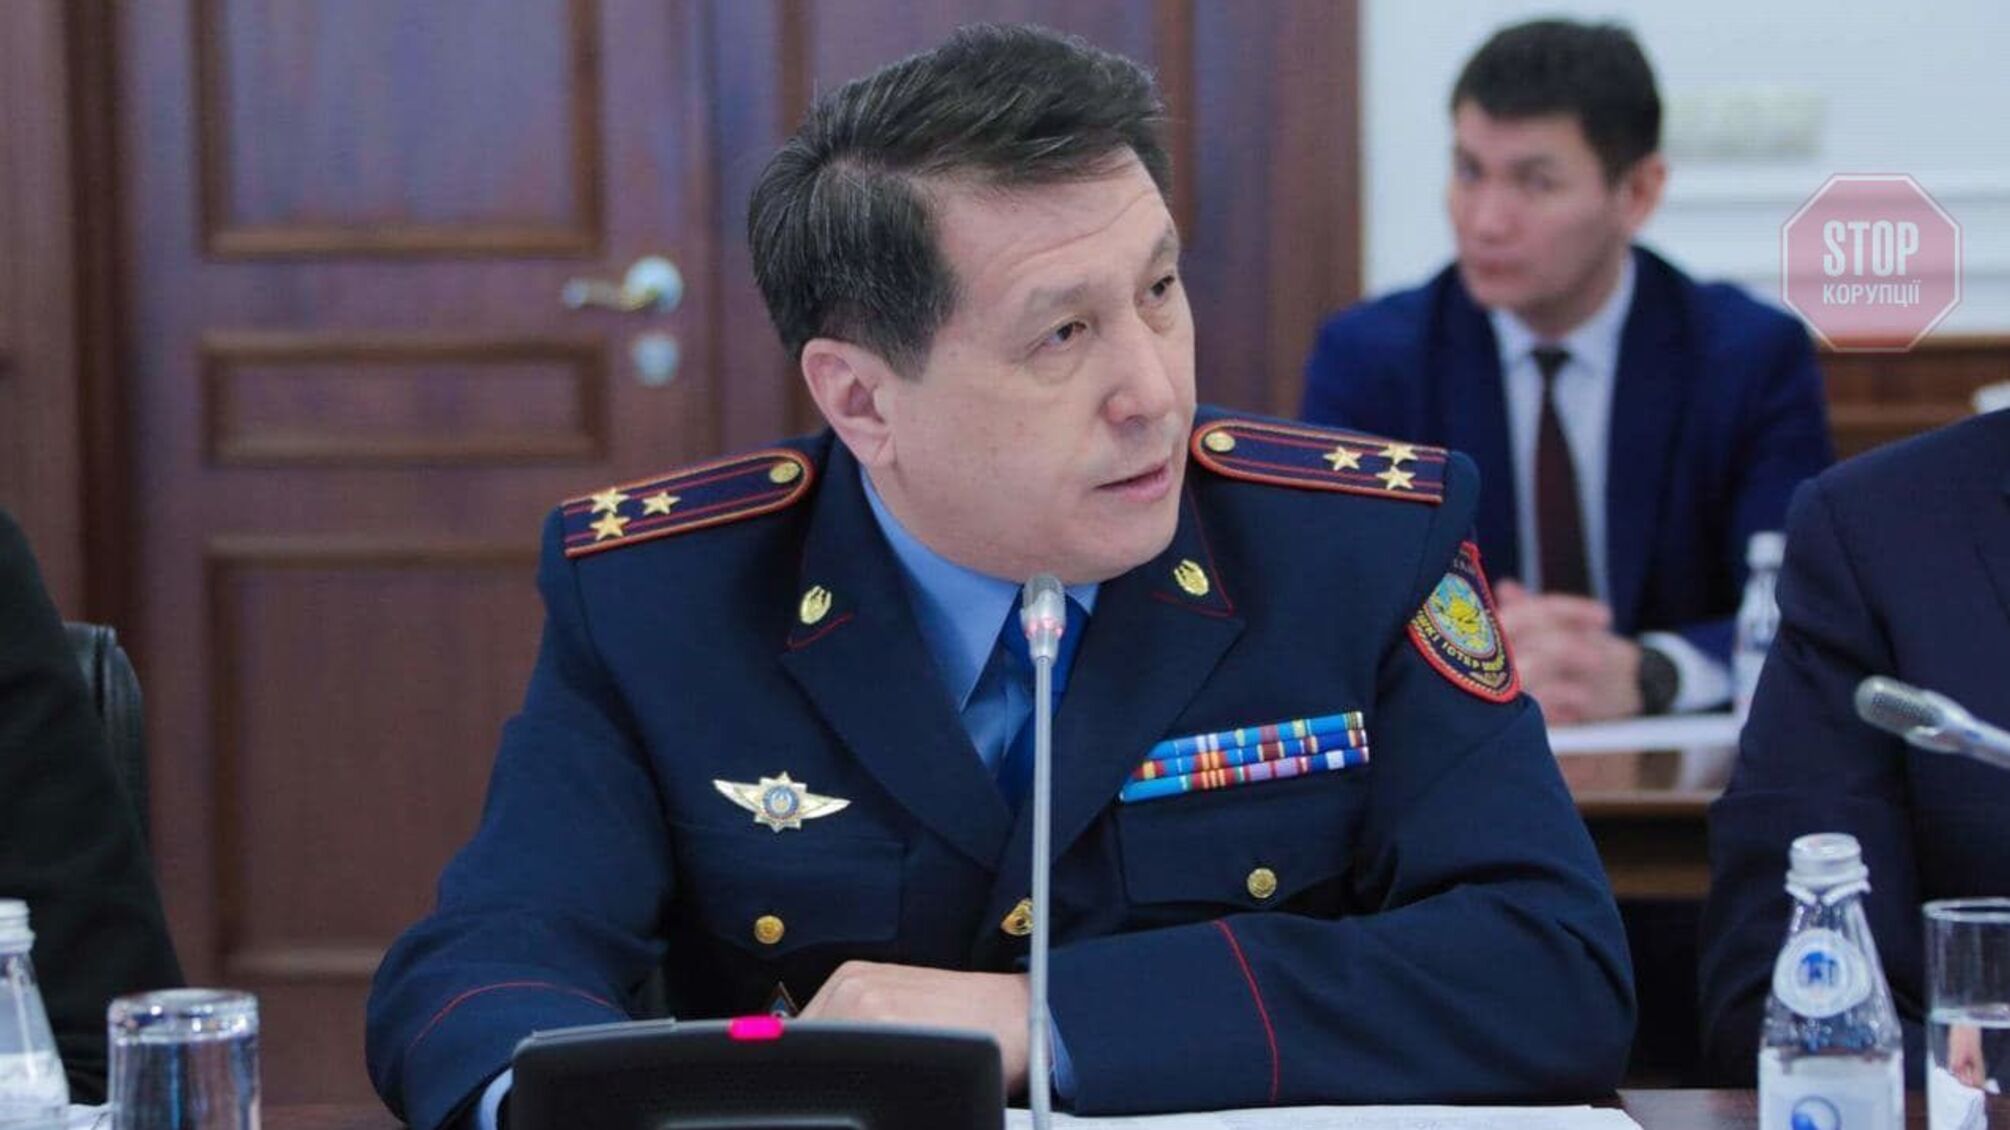 Голова поліції Казахстану на півдні скоїв самогубство: журналісти припускають, що через протести 